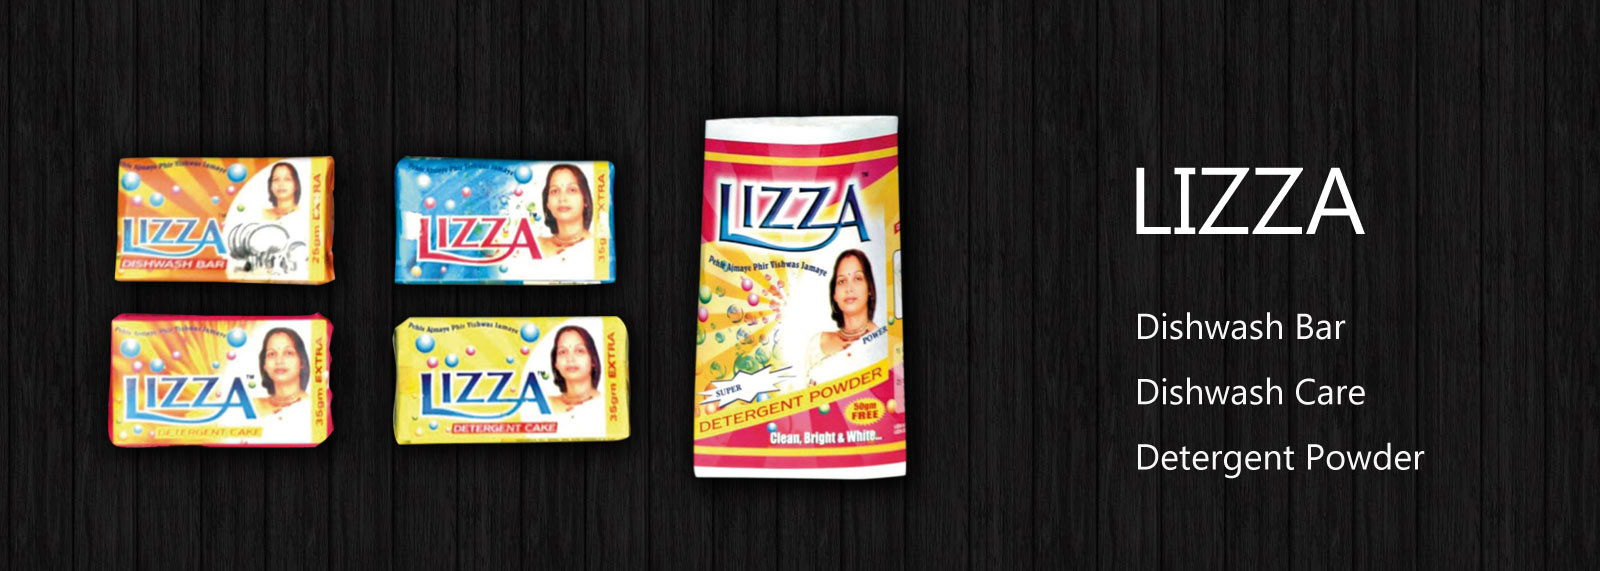 Lizza dishwash bar / detergent powder